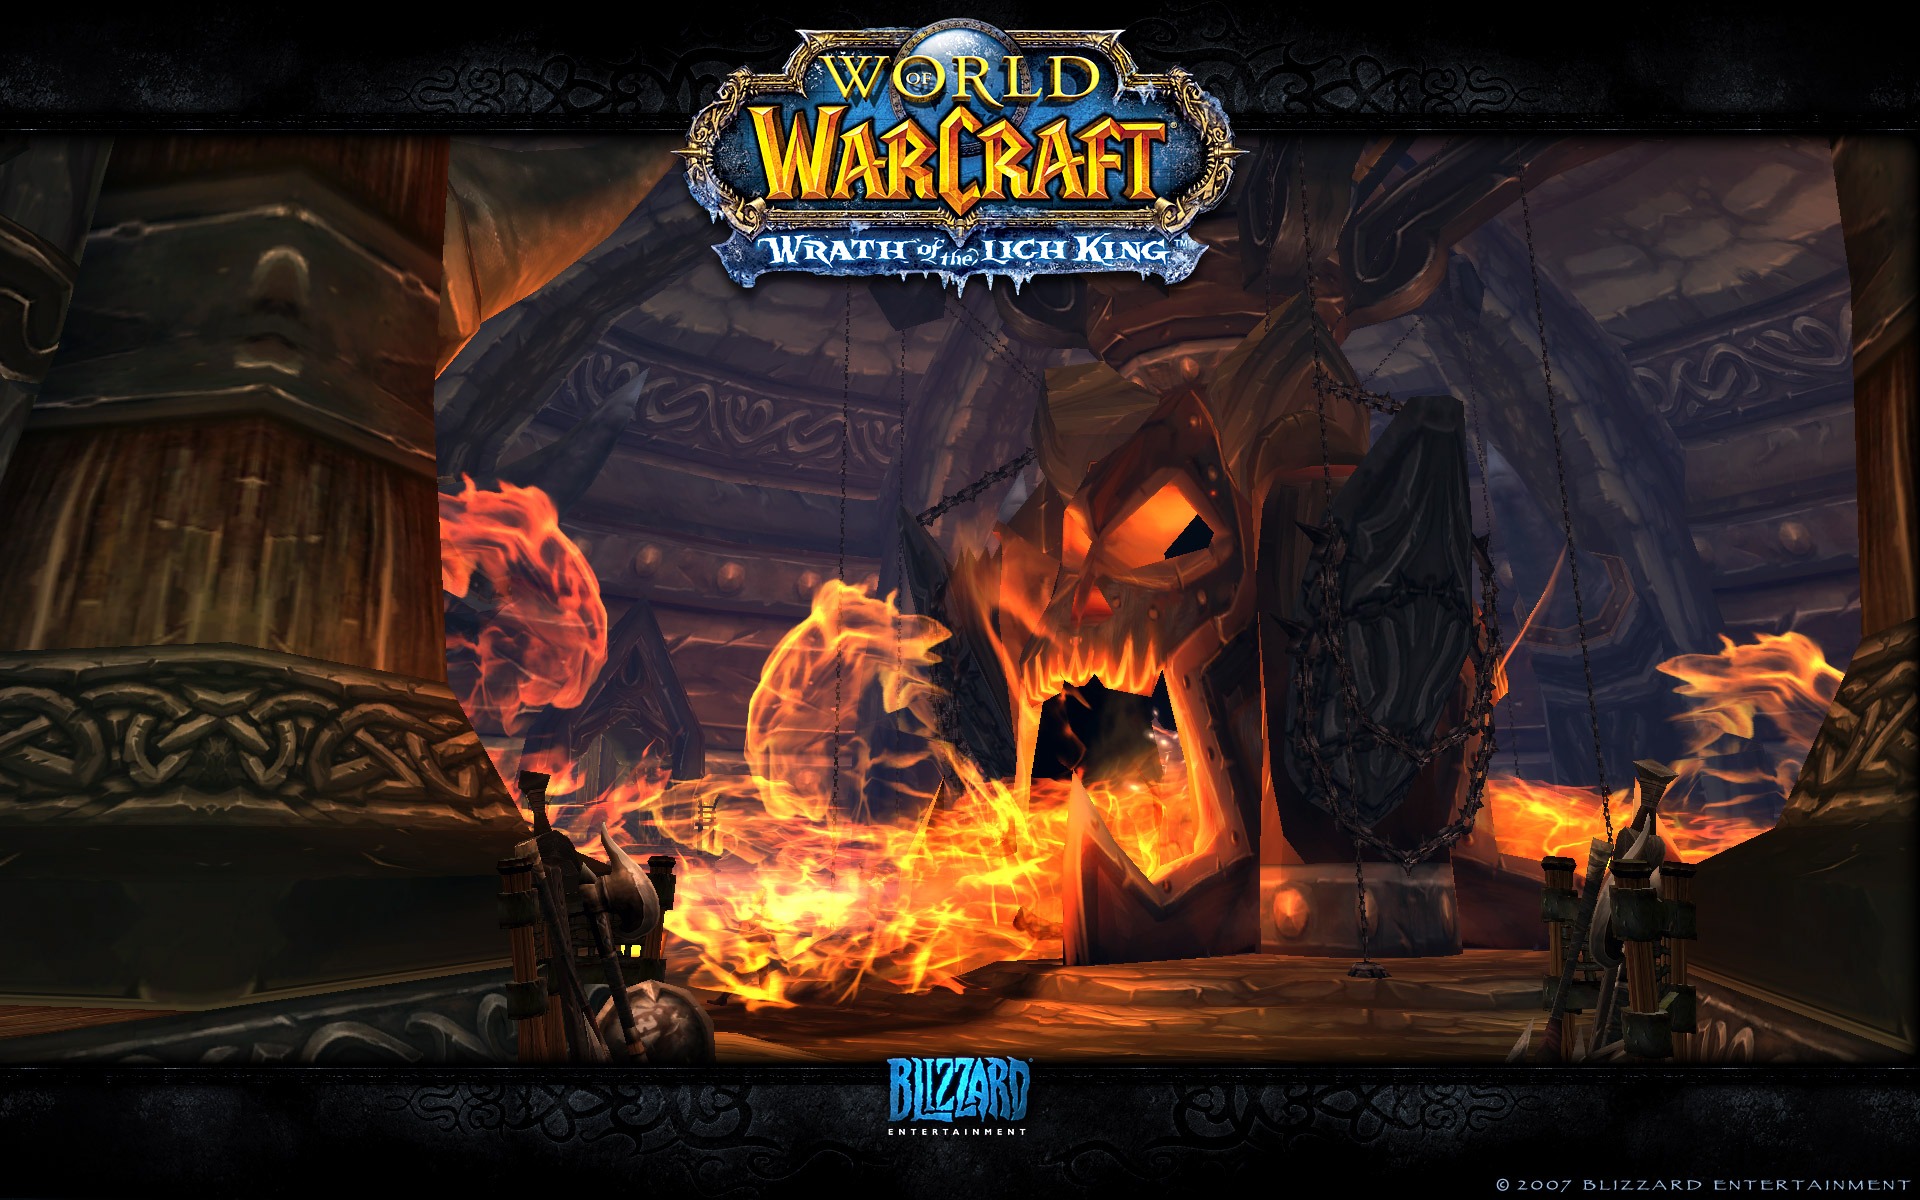 World of Warcraft 魔獸世界高清壁紙(二) #5 - 1920x1200